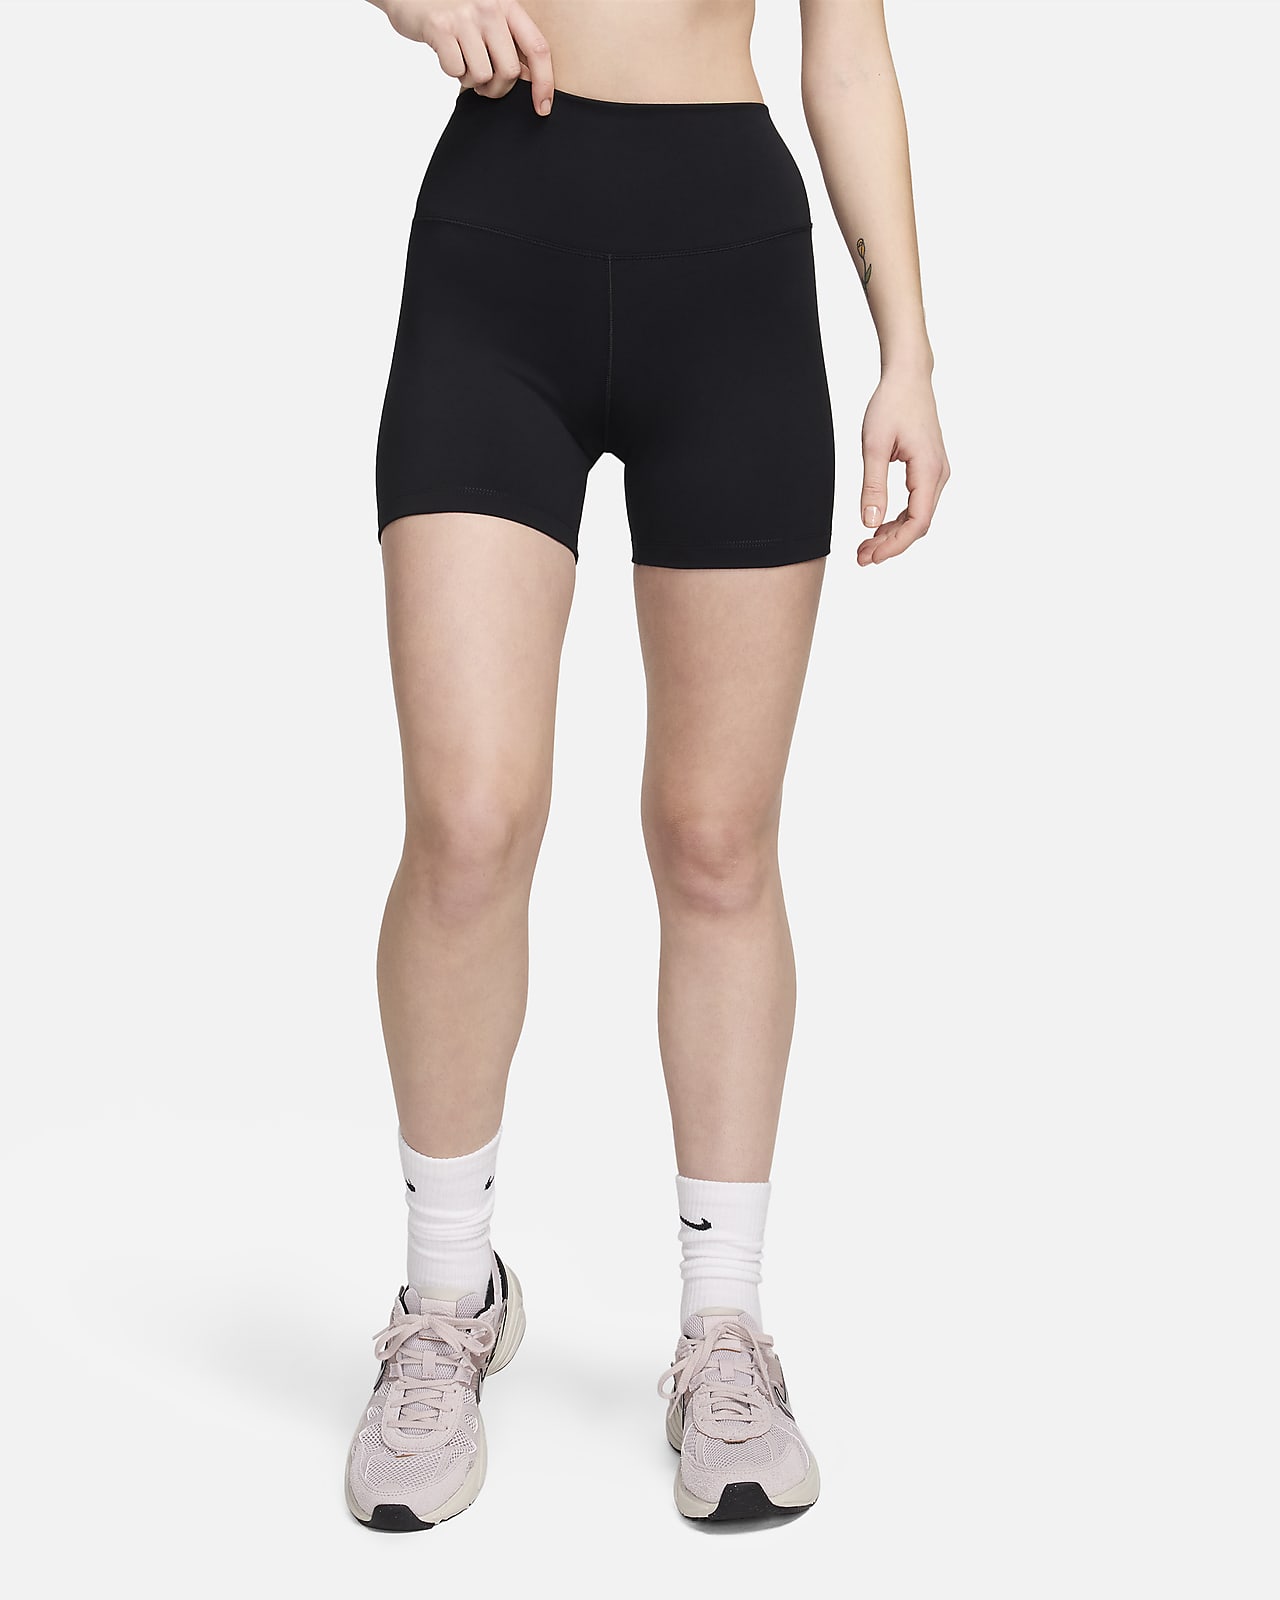 Nike One Yüksek Belli 13 cm Kadın Bisiklet Şortu